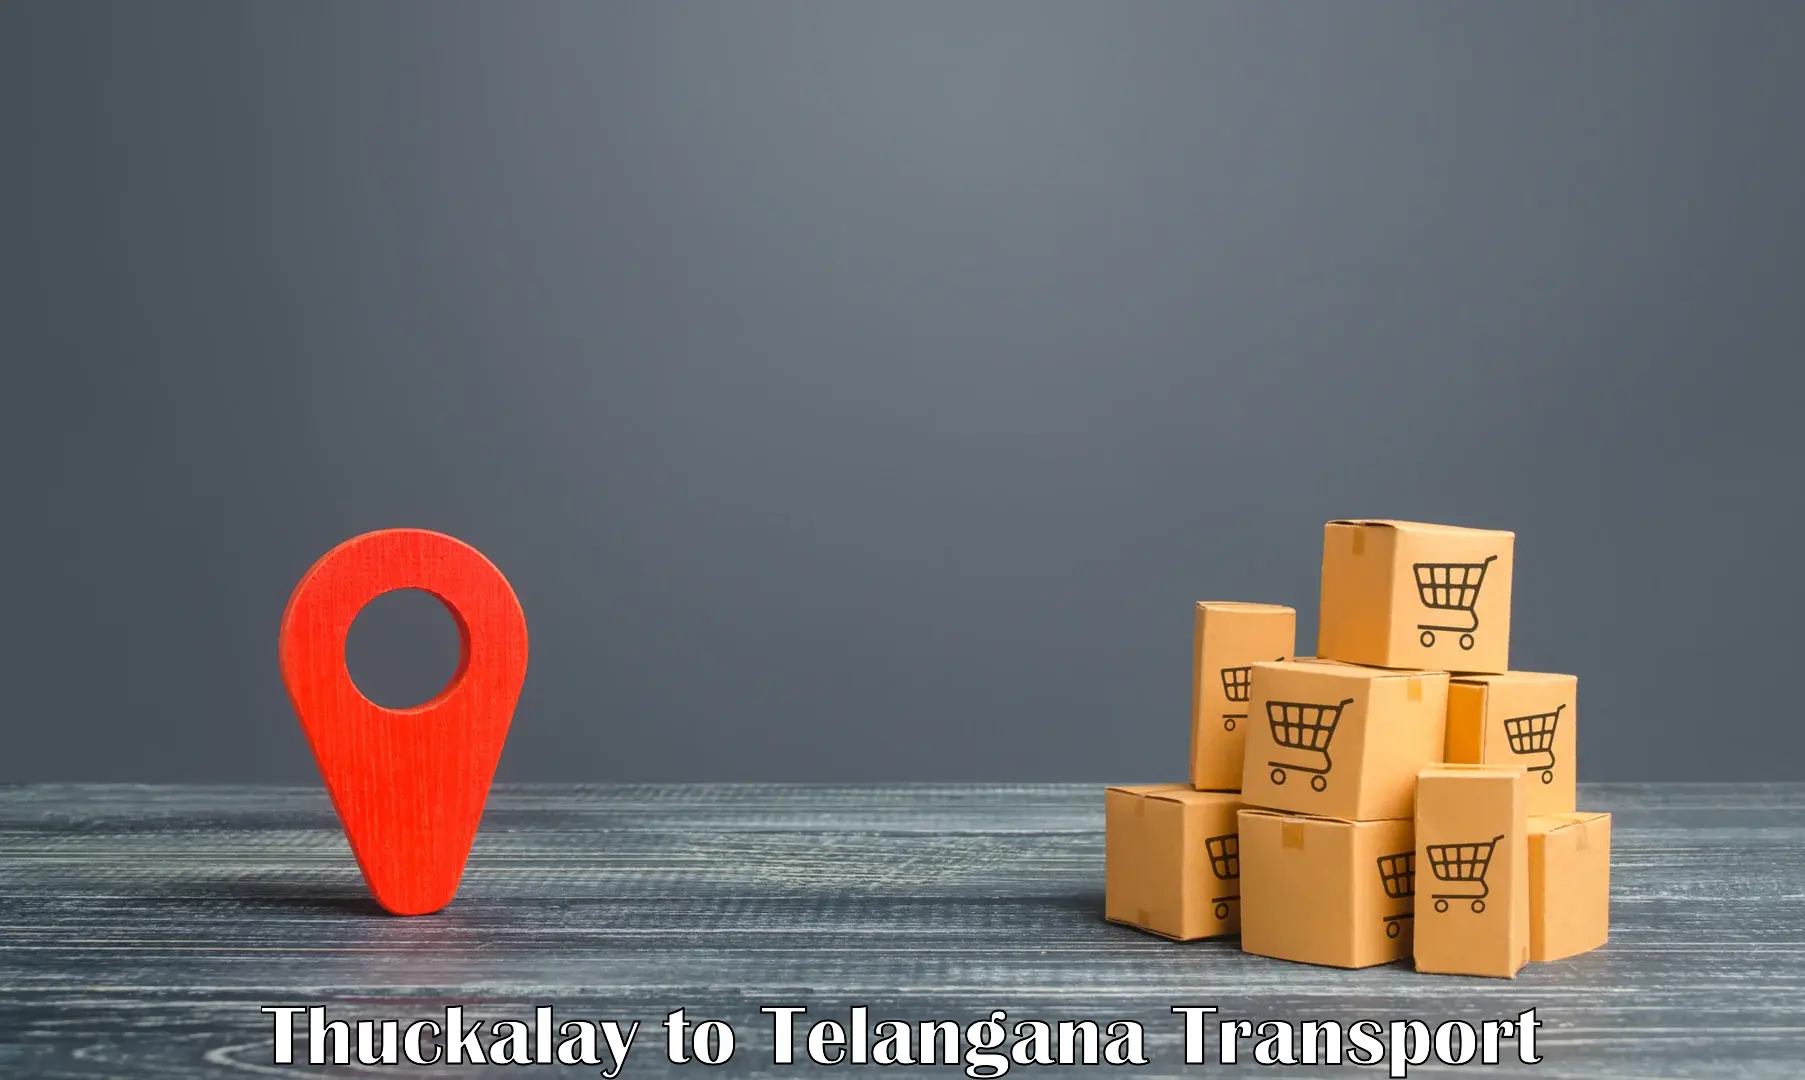 Container transportation services Thuckalay to Hanamkonda